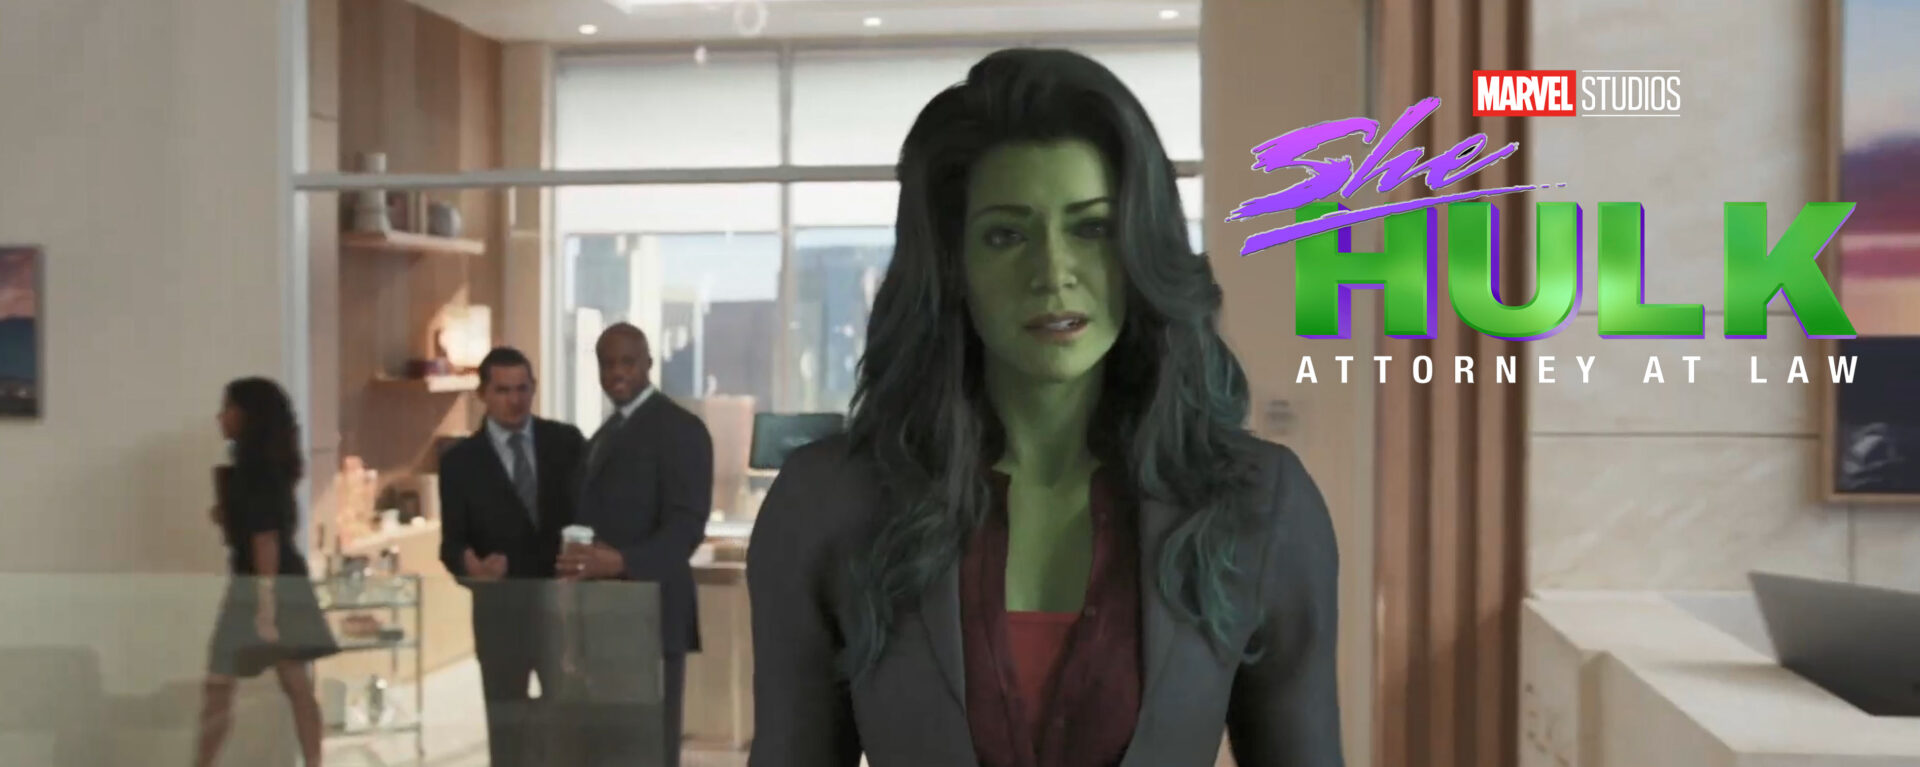 she hulk teaser trailer banner2